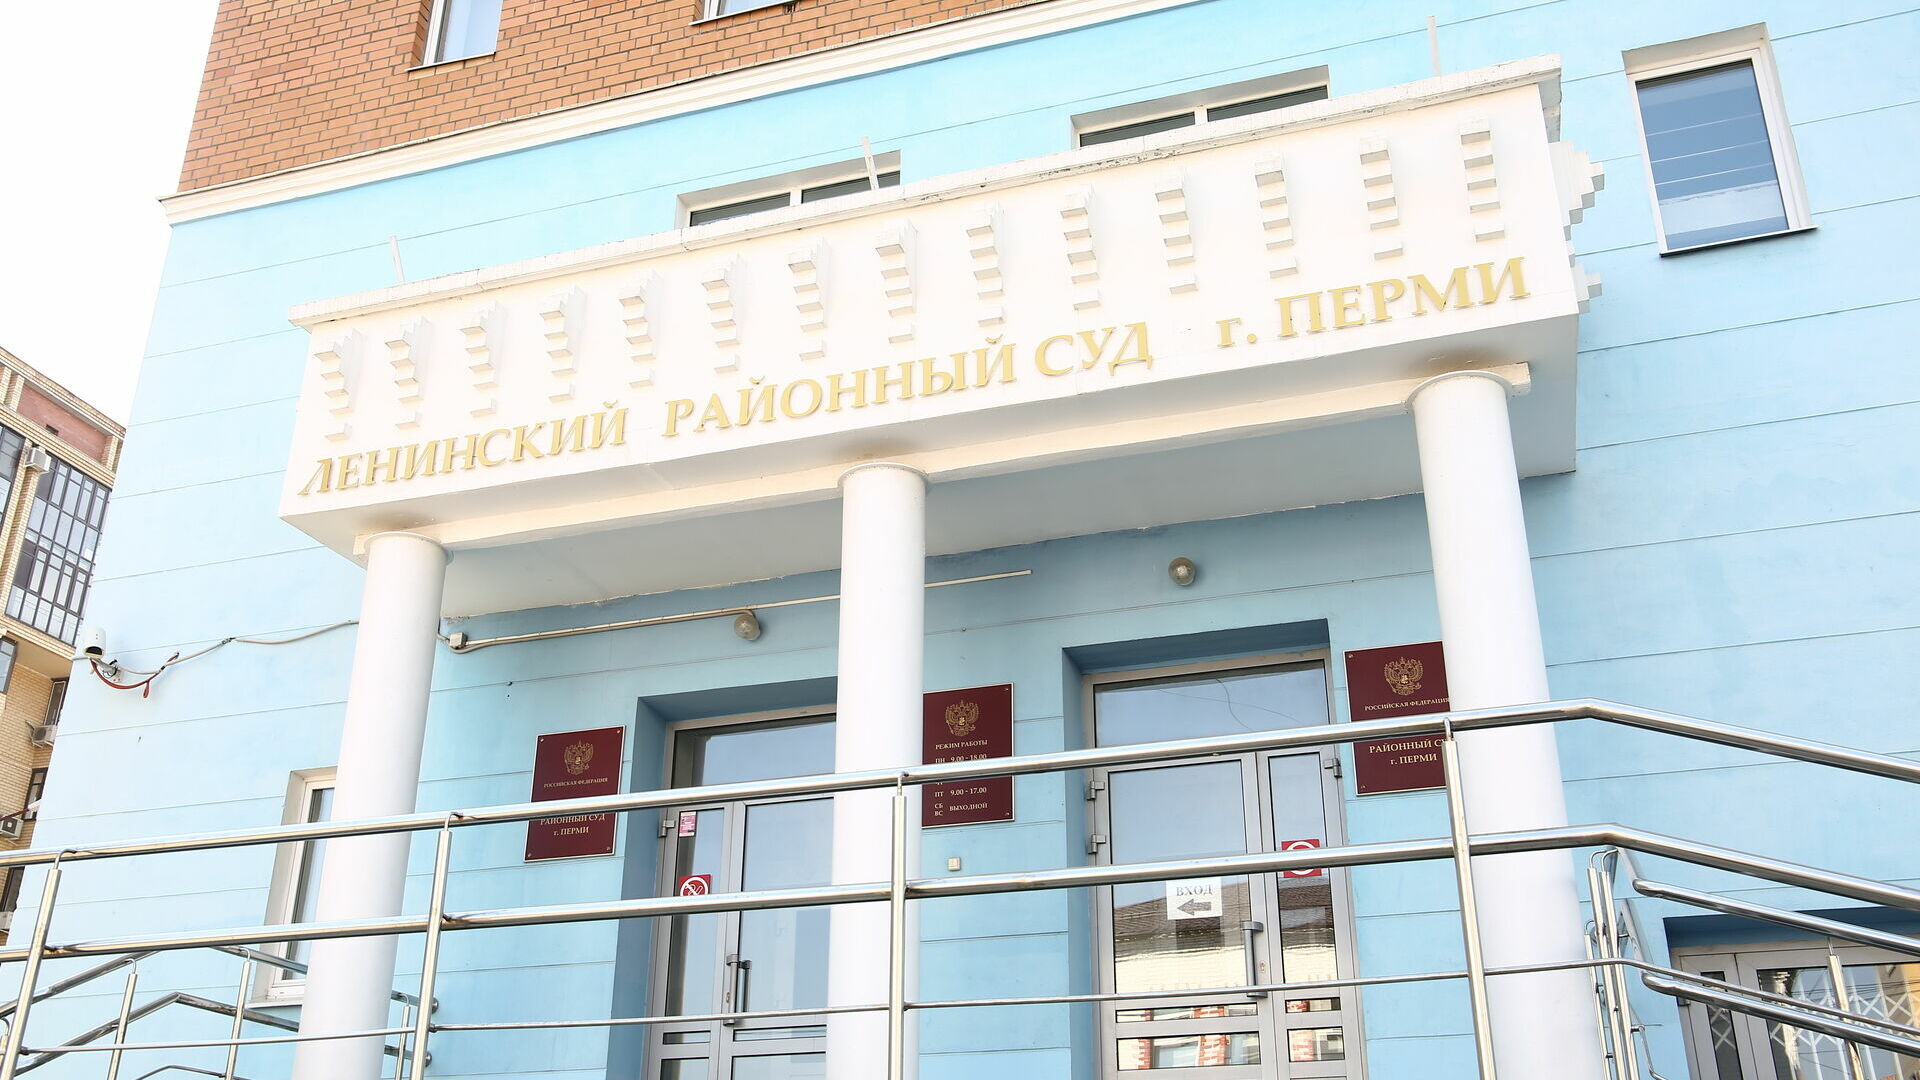 Дело по факту избиения DJ Smash поступило в Ленинский районный суд